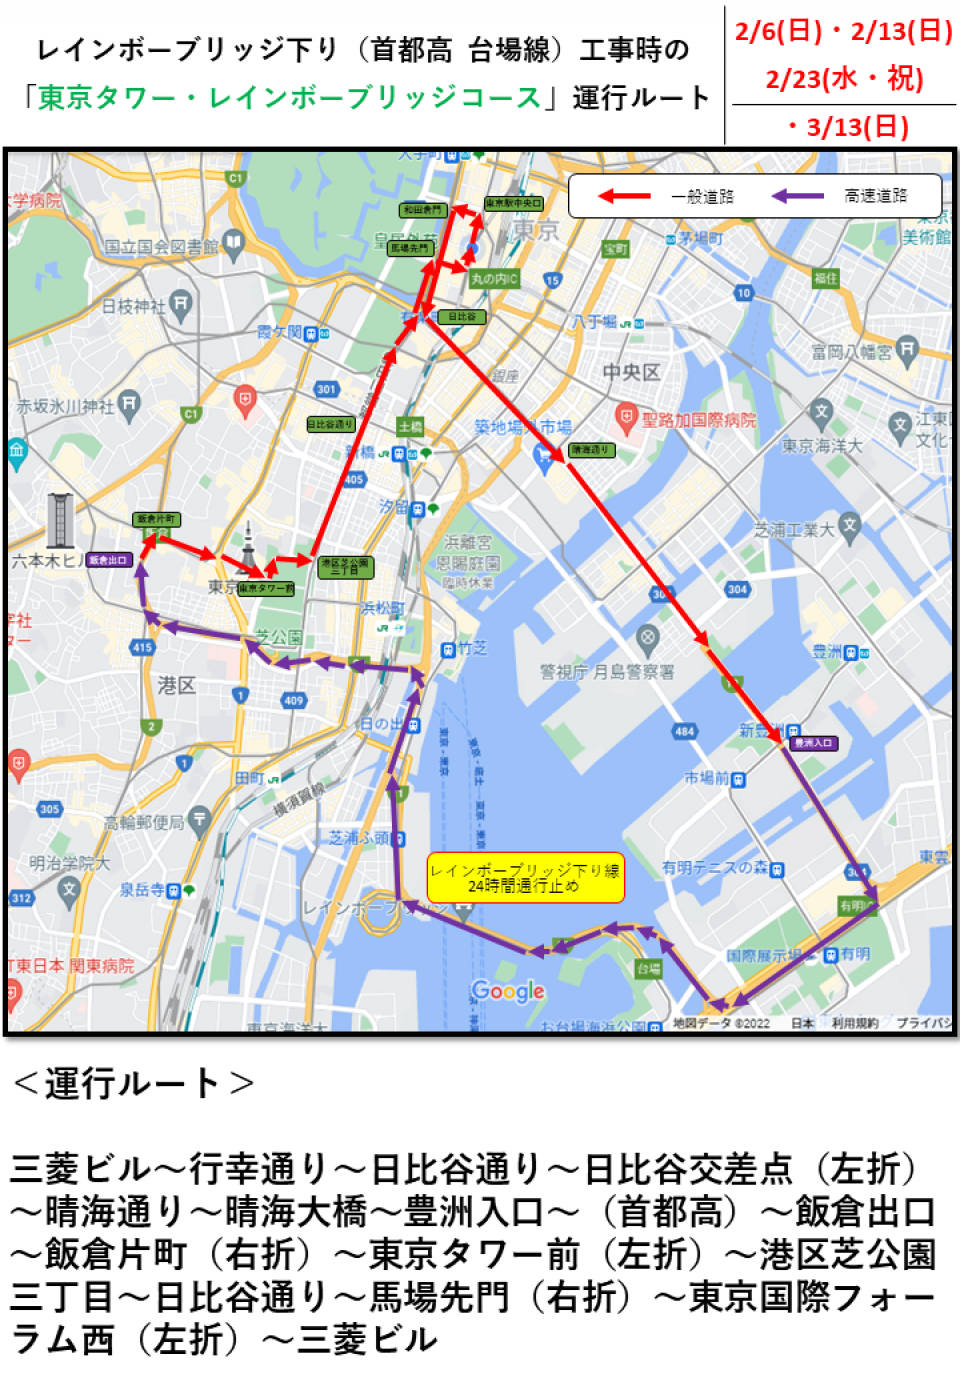 レインボーブリッジ下り線工事のため、「東京タワー・レインボーブリッジコース」の運行ルートを変更のお知らせ